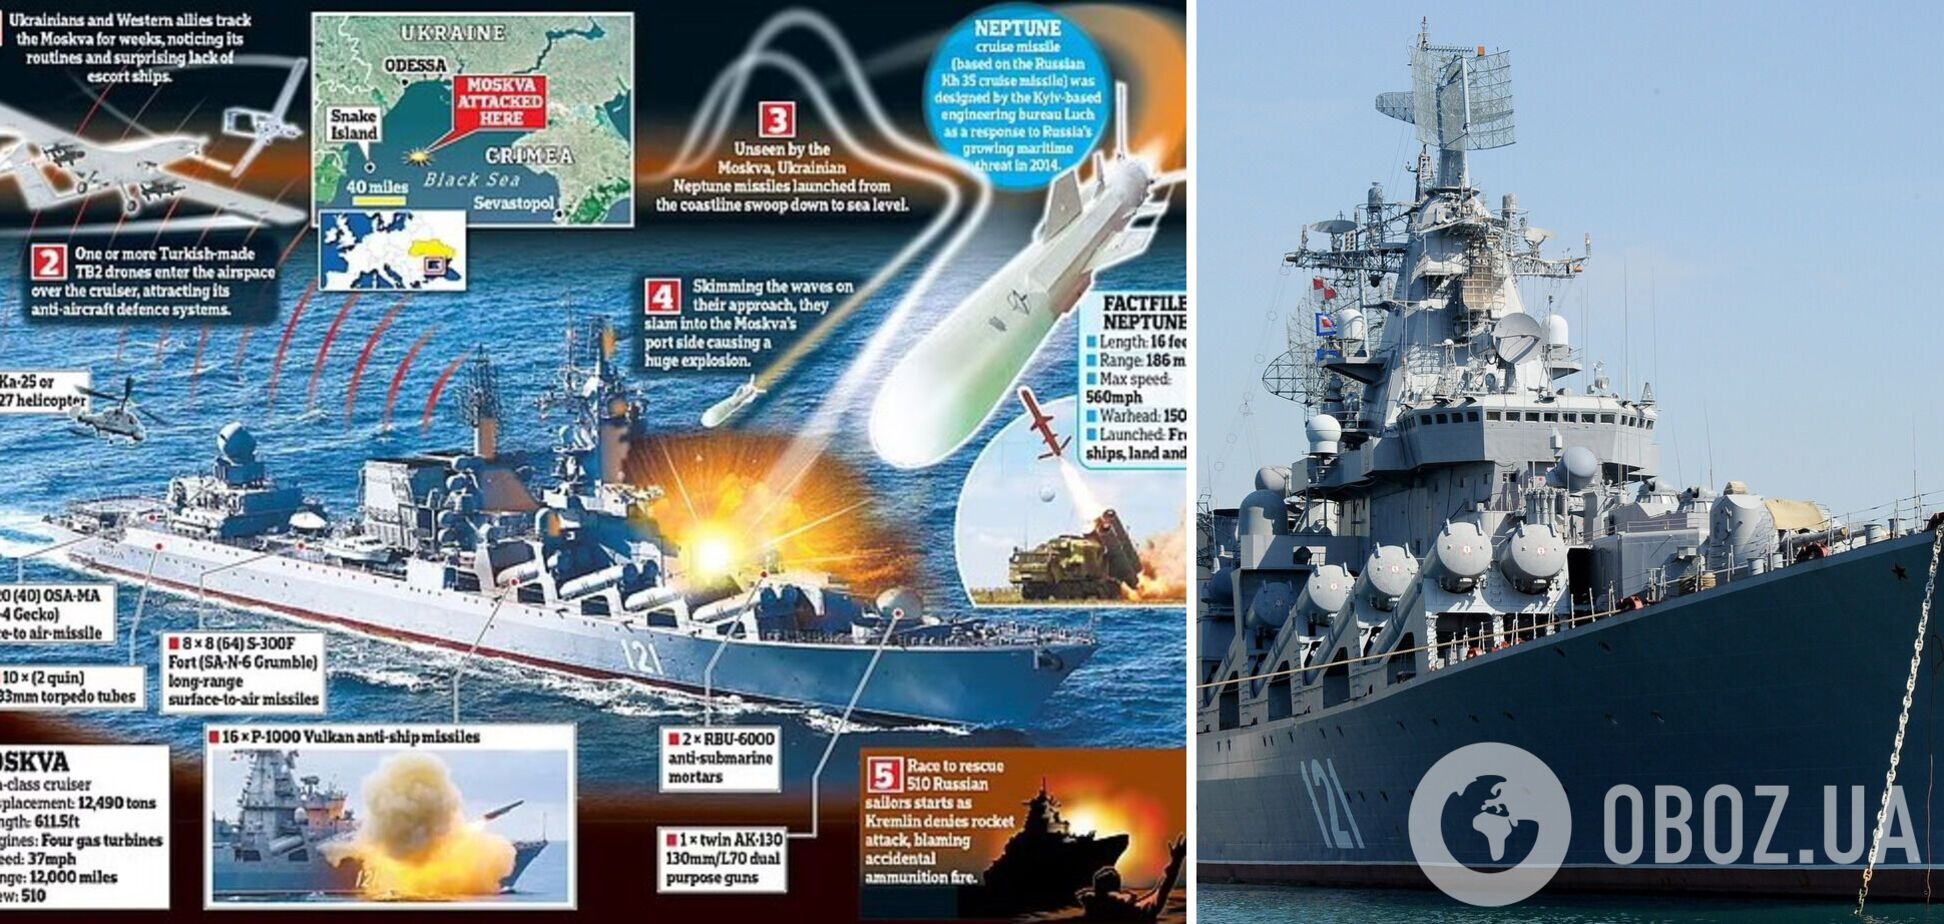 Украина использовала 'гениальную уловку' для уничтожения ракетного крейсера 'Москва': раскрыты новые детали